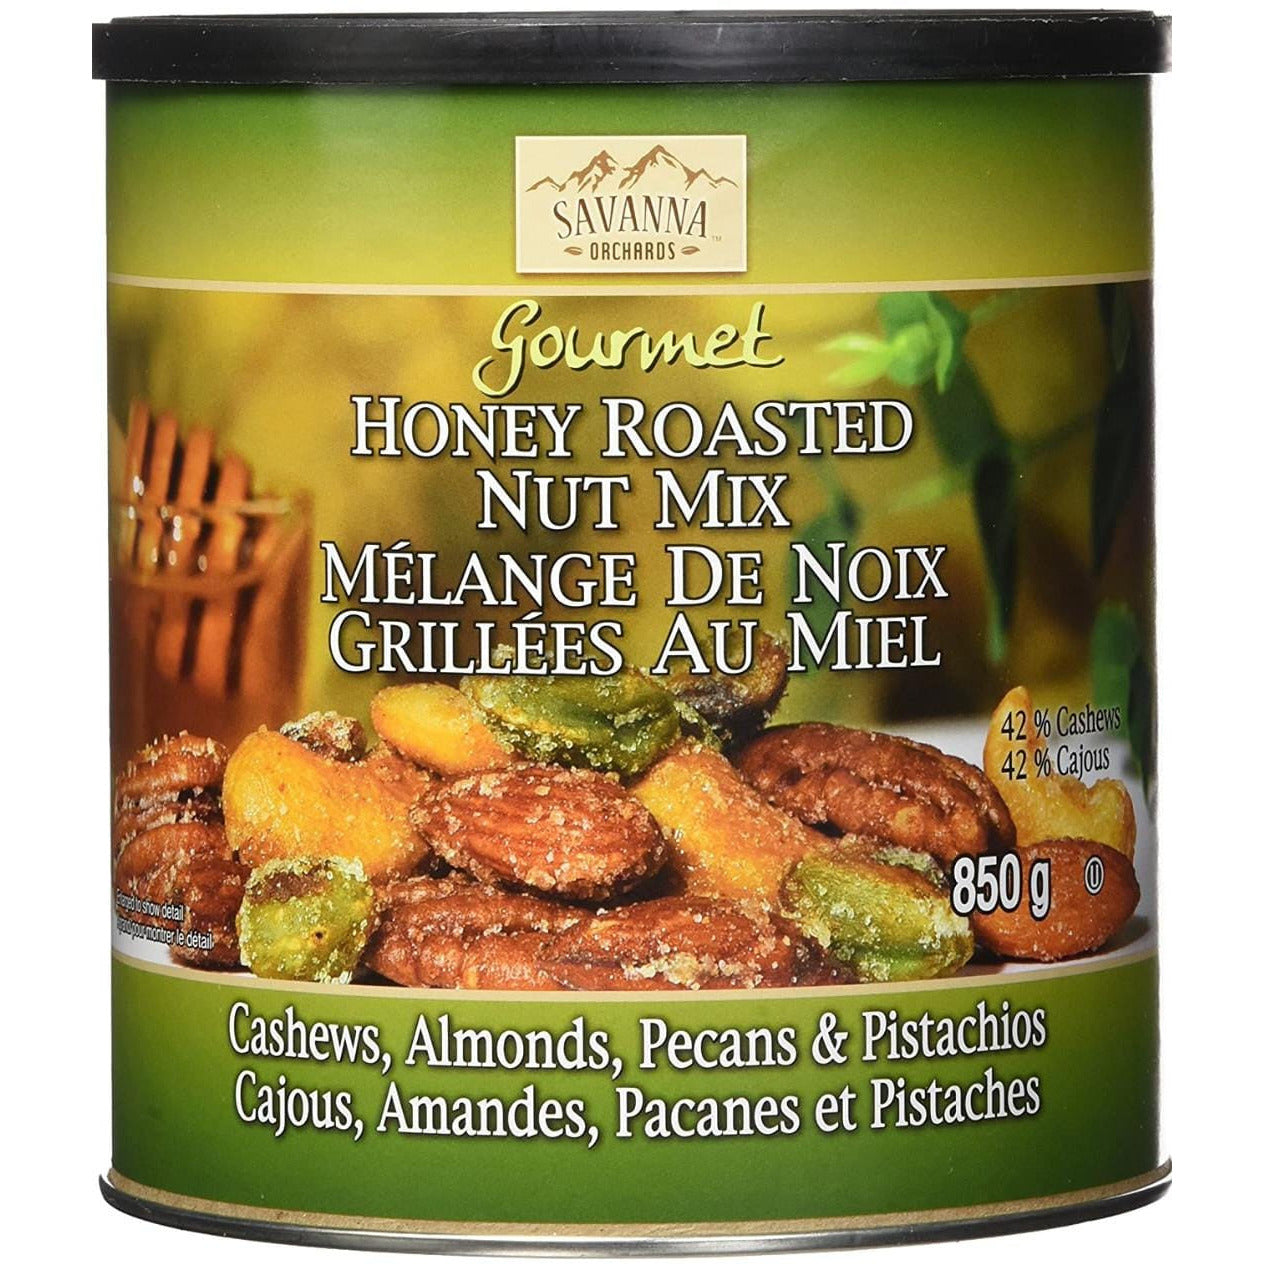 Honey Roasted Nut Mix, 850g